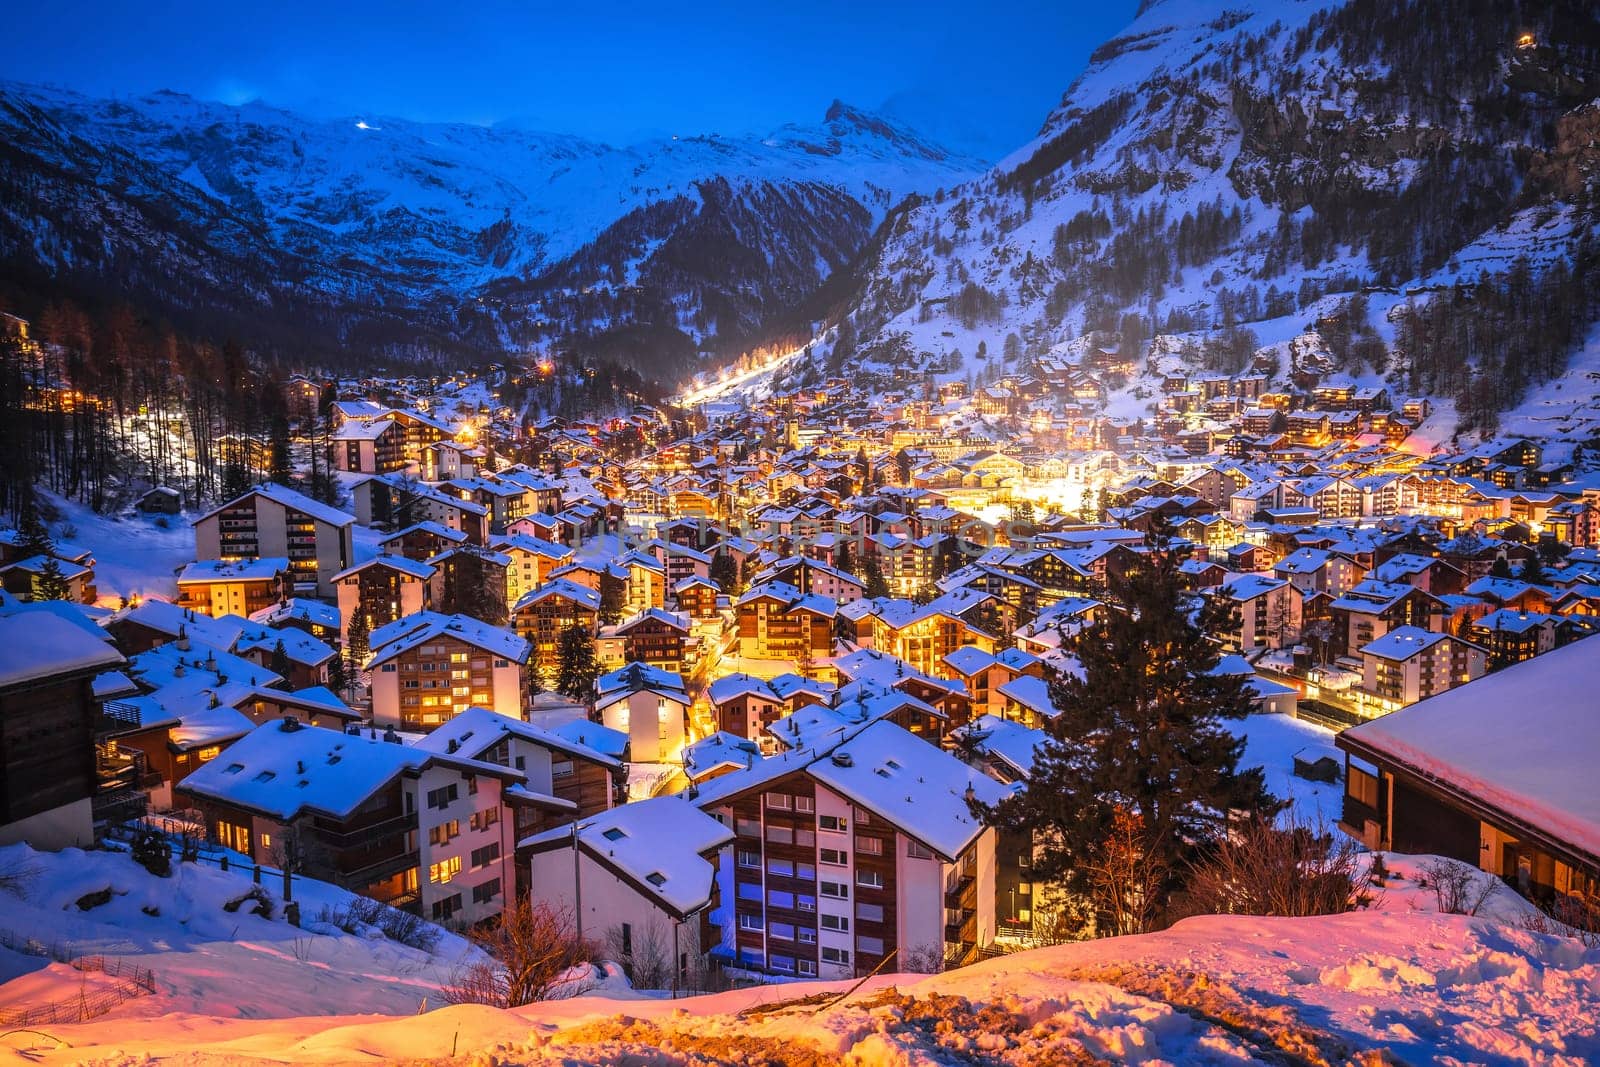 Idyllic village of Zermatt rooftops evening view, luxury winter destination in Switzerland